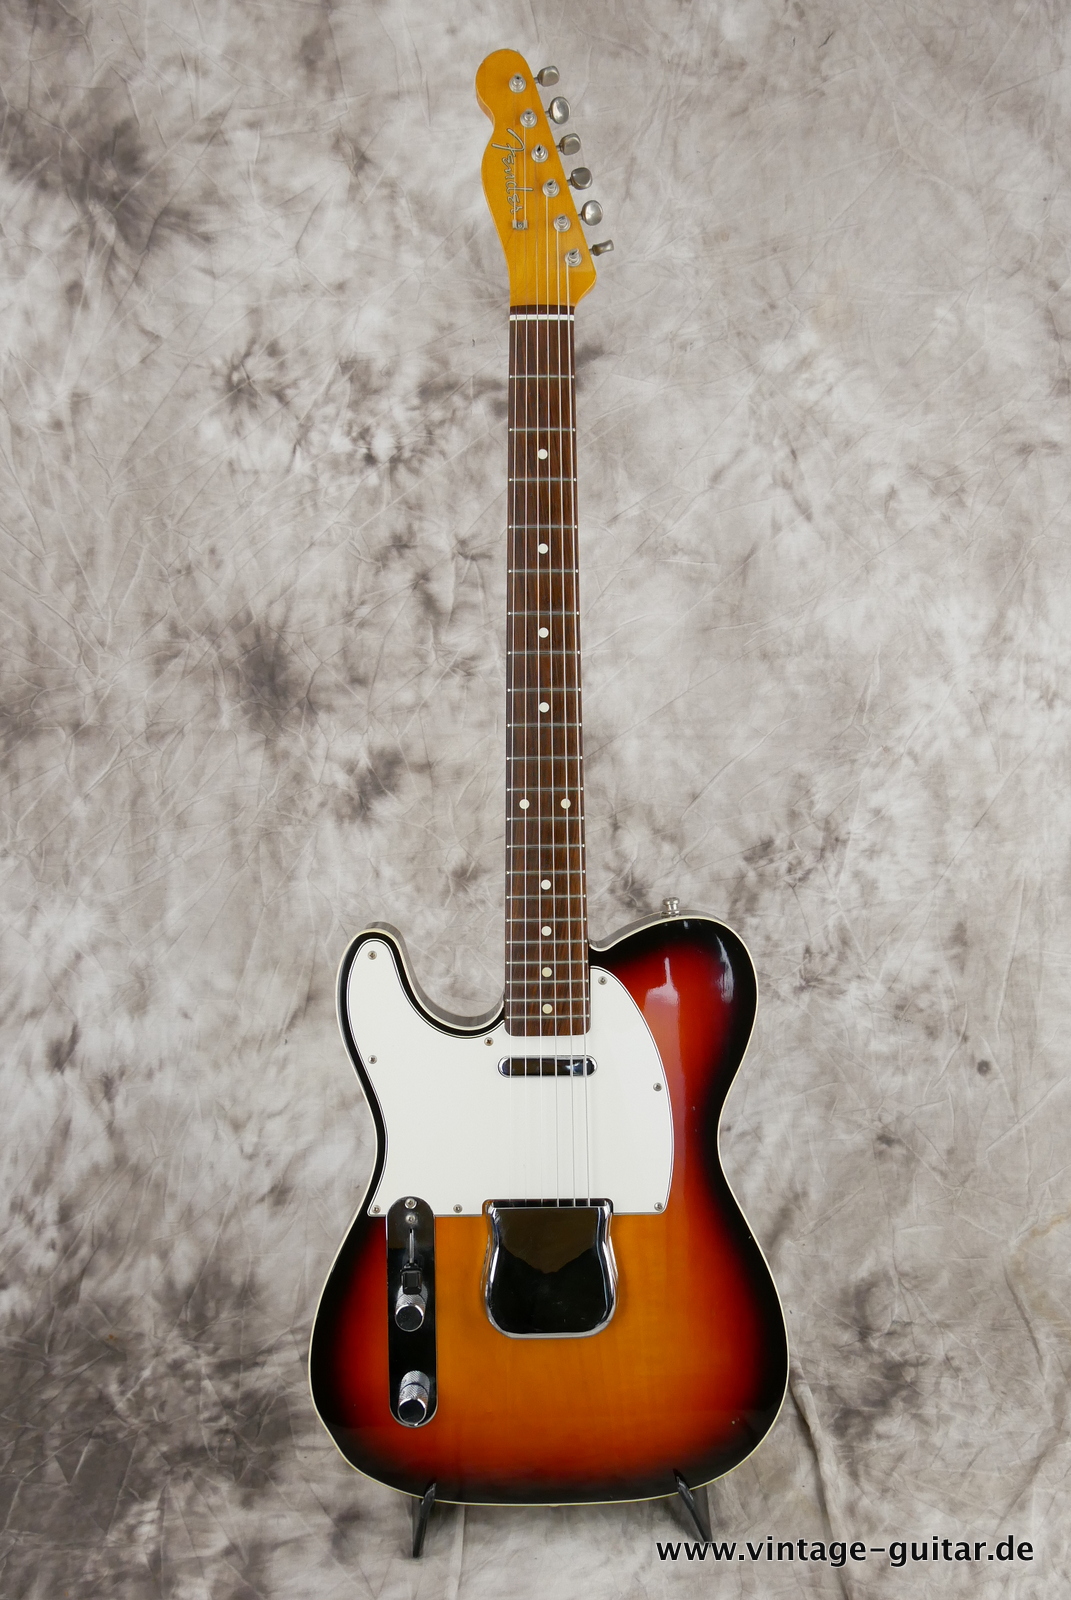 Fender-Telecaster-Custom-MIJ-62-reissue-1985-sunburst-001.JPG